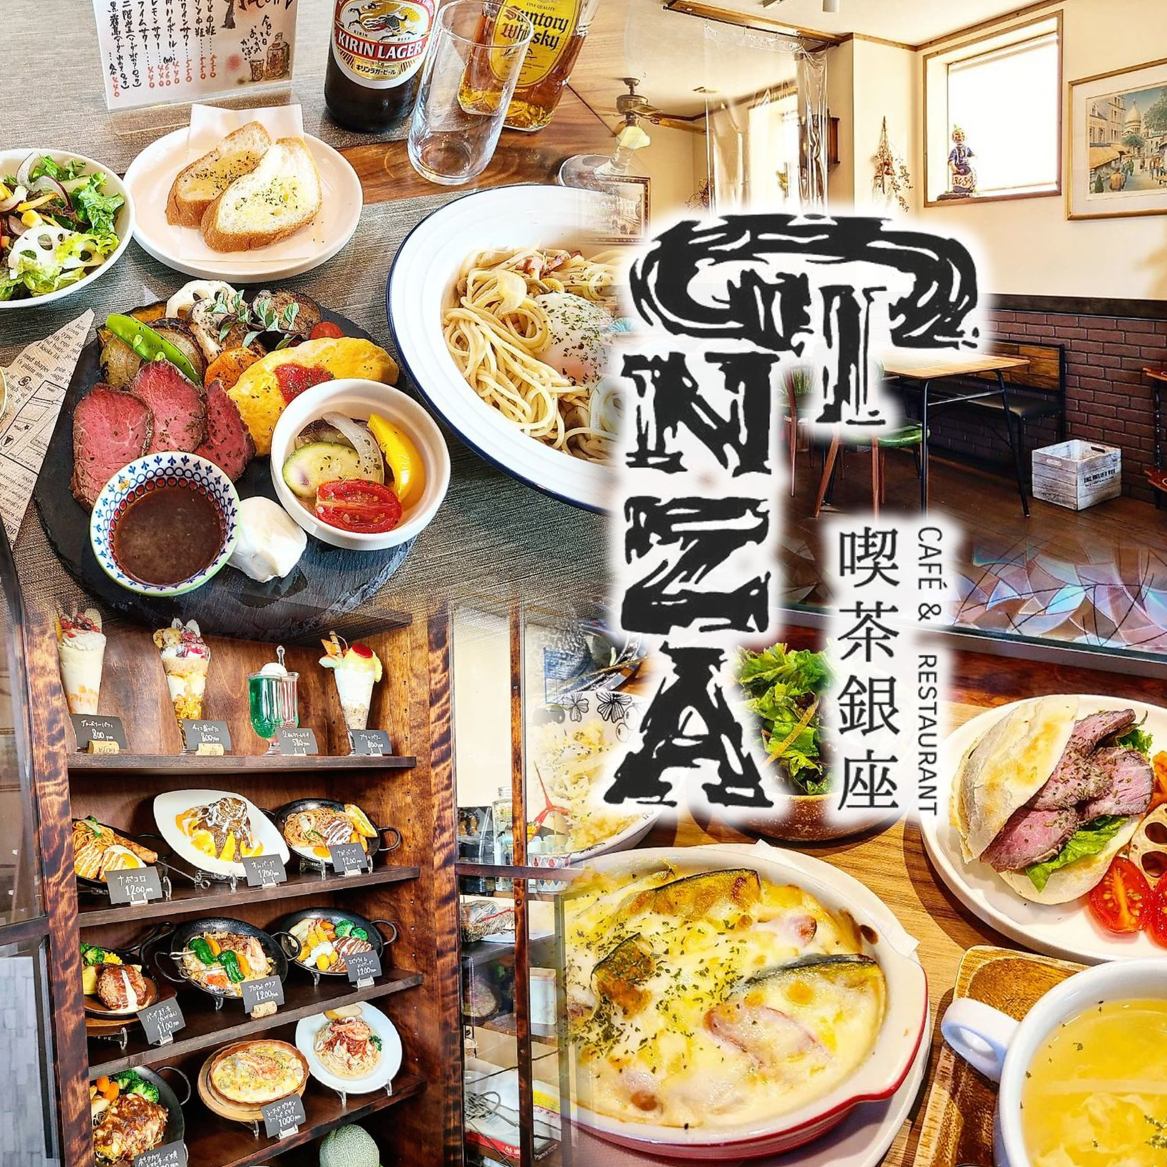 创业于1968年◇从很久以前就没有改变的口味♪深受当地顾客喜爱的西式餐厅“Coffee GINZA”